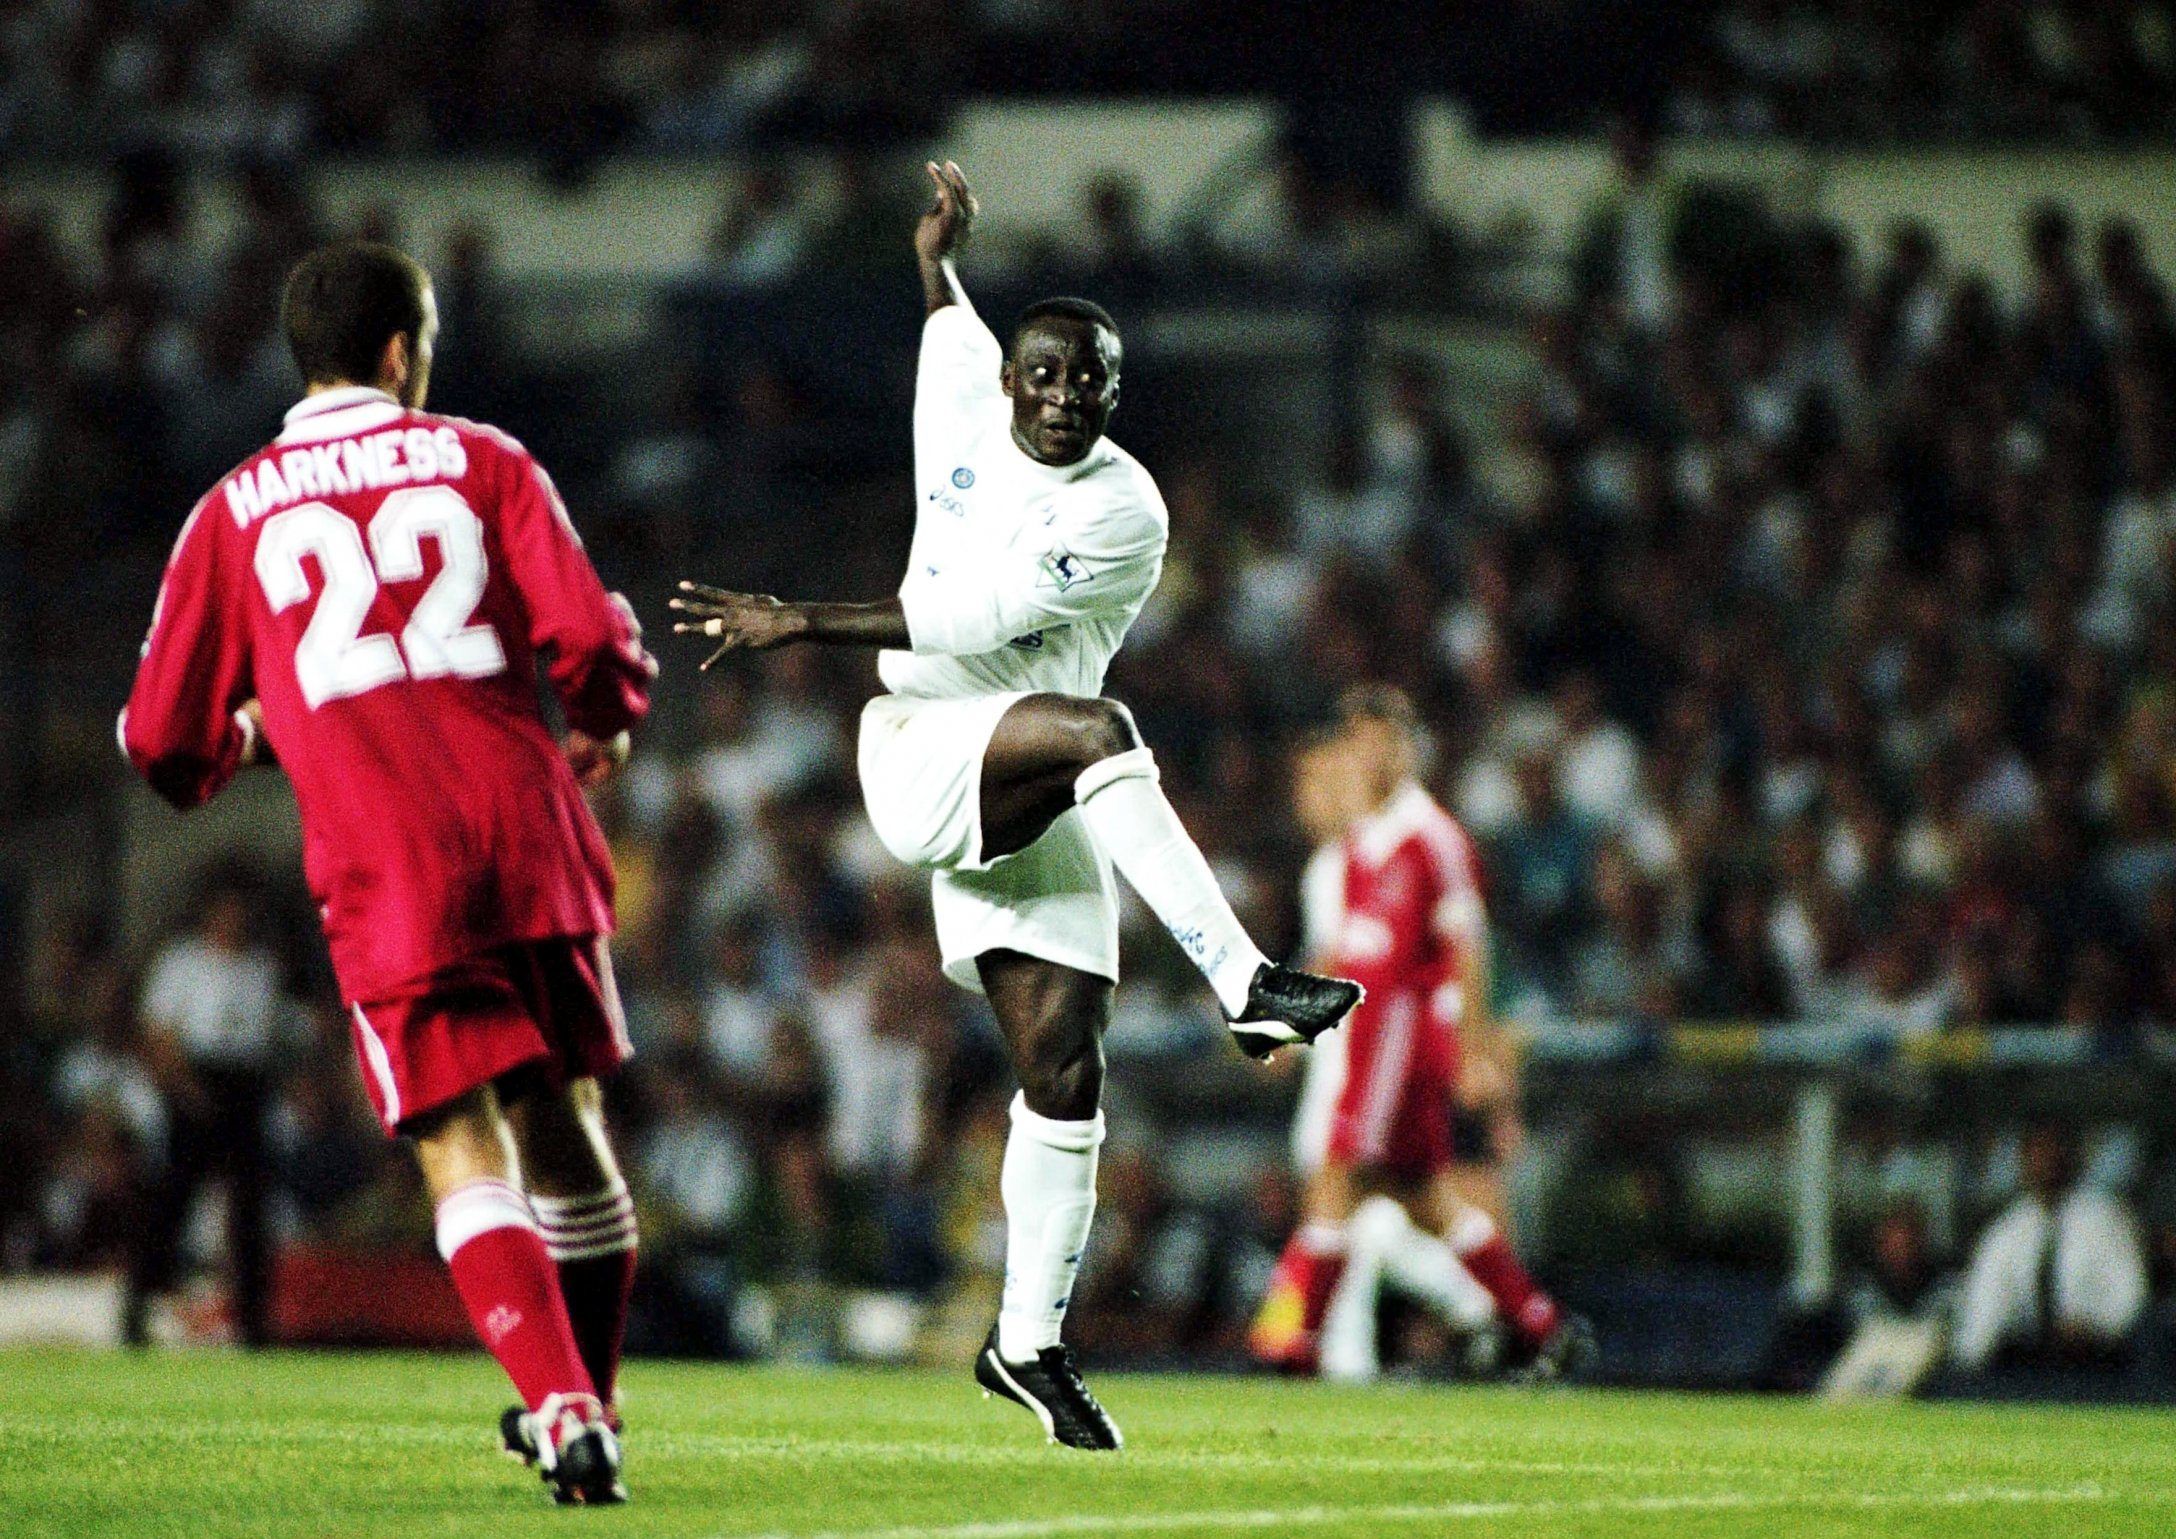 Tony Yeboah volley vs Liverpool